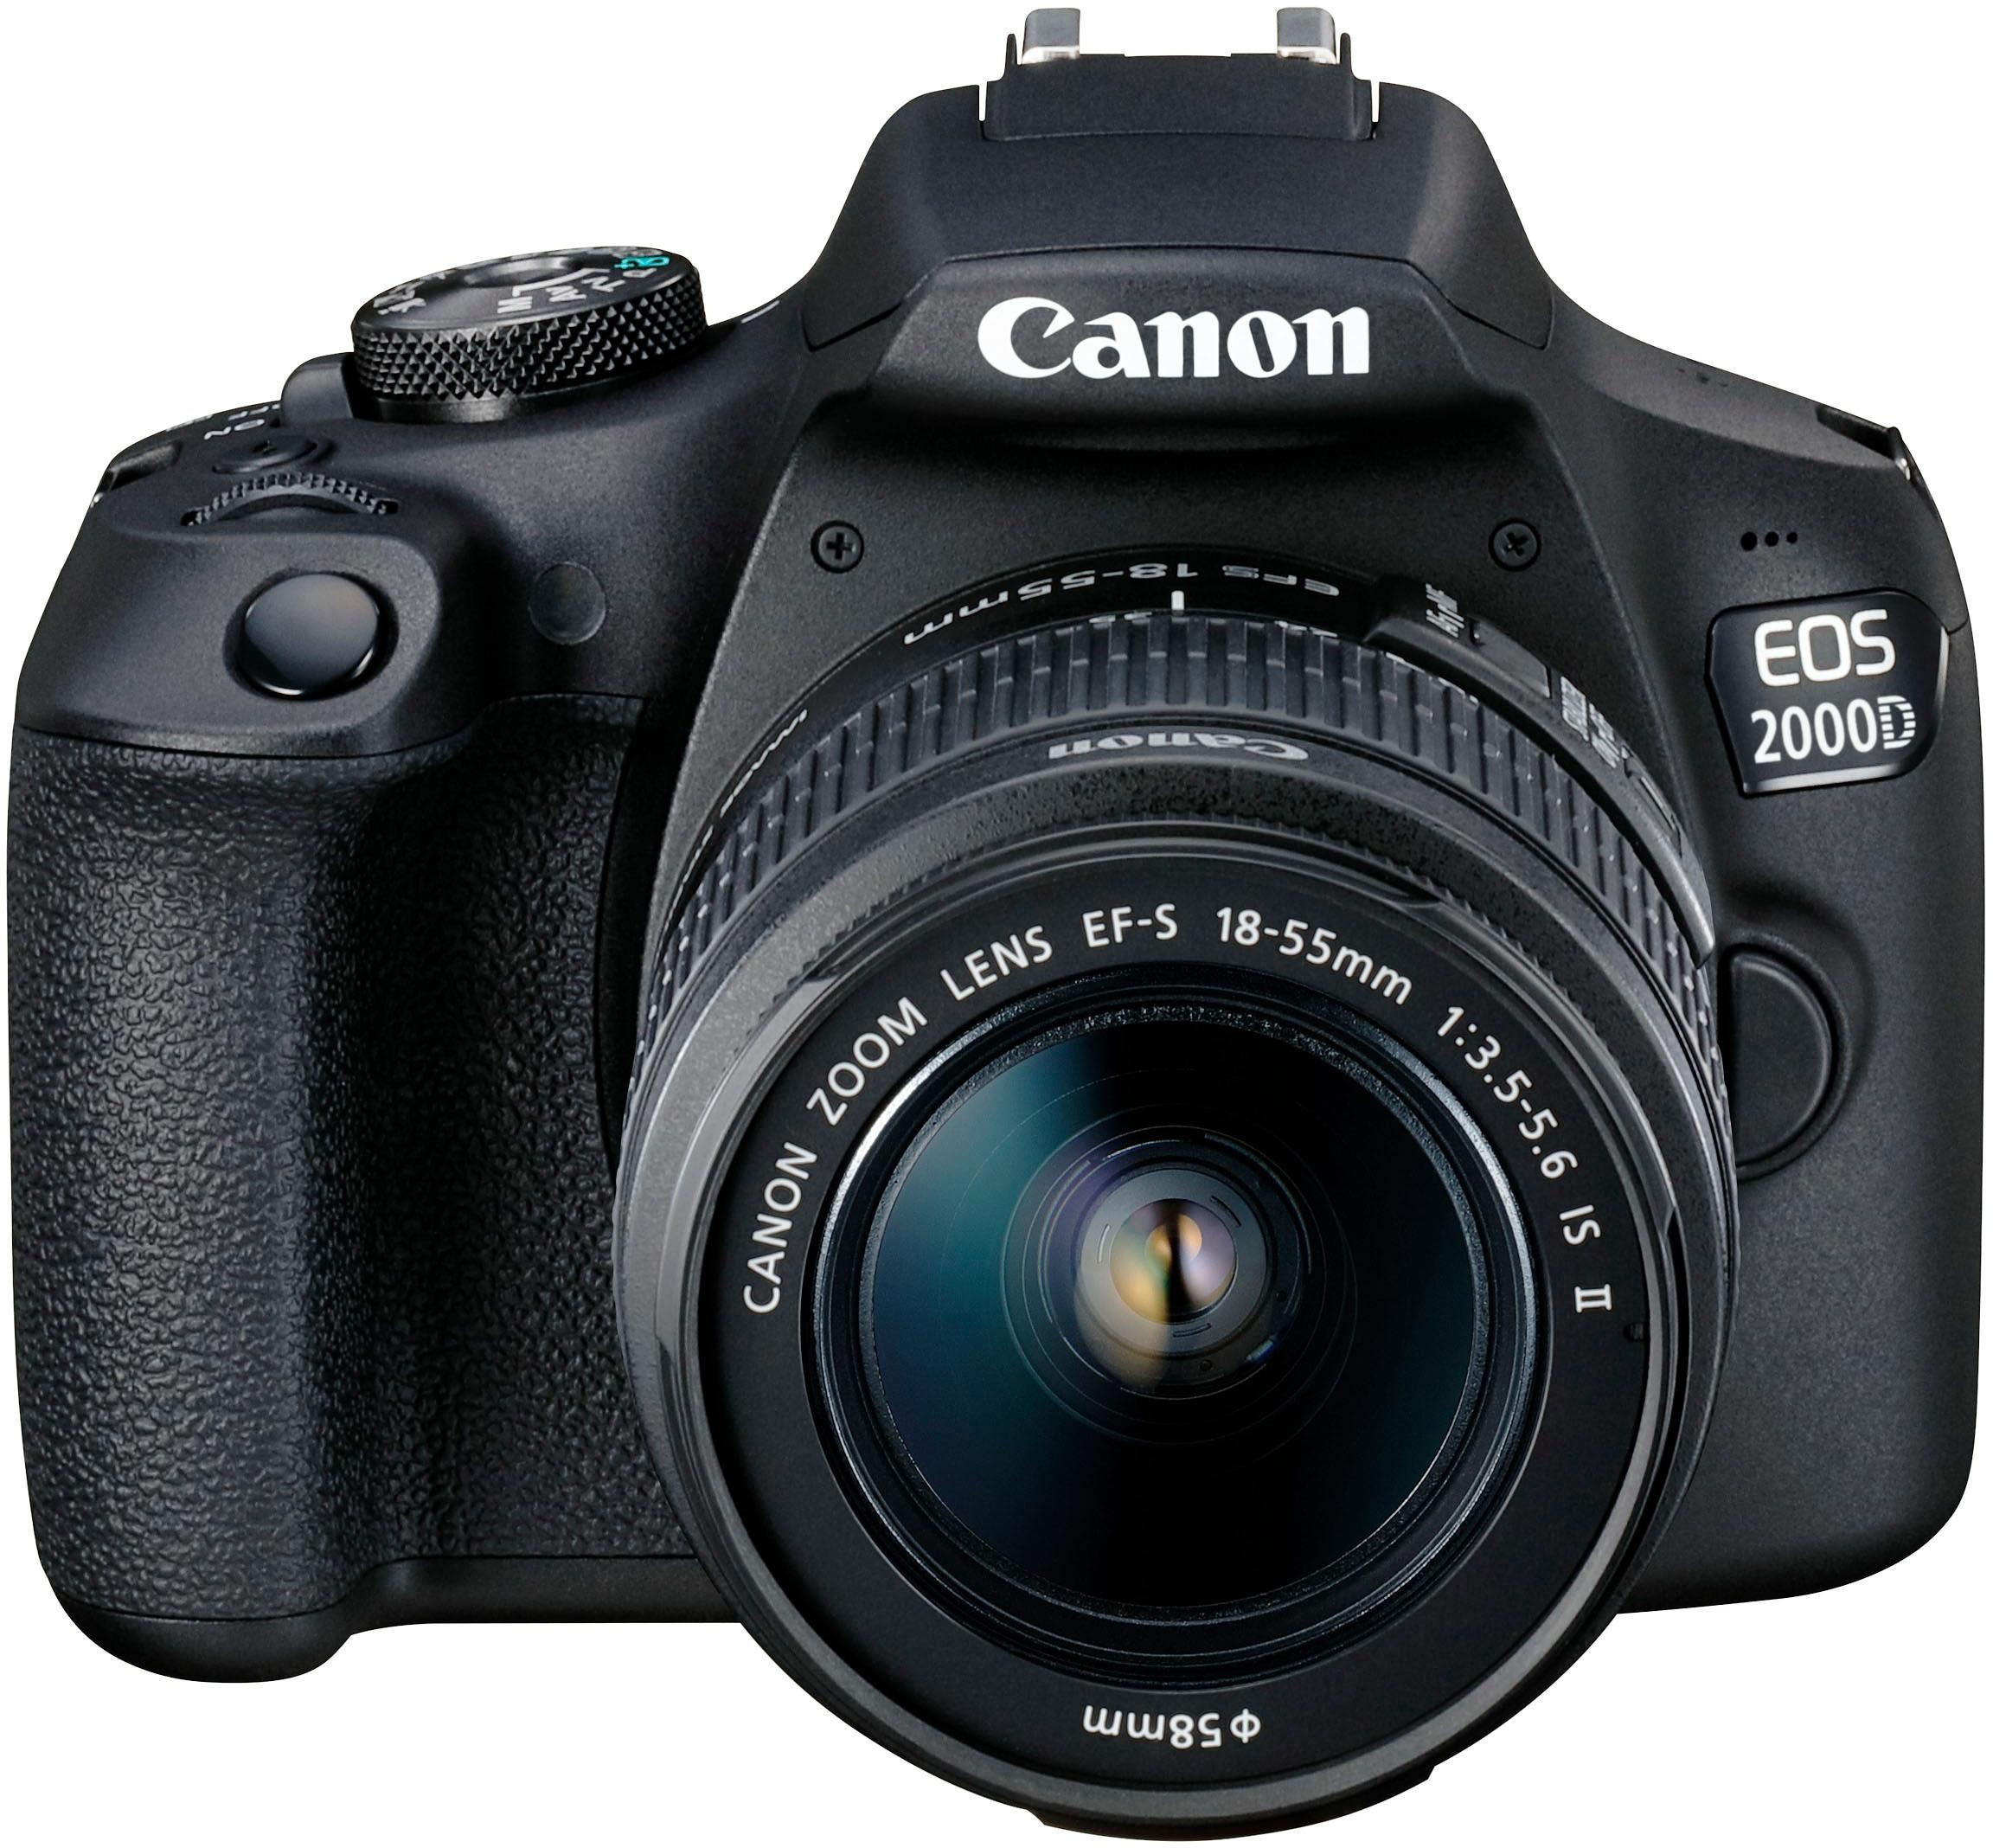 Digitalkamera von Canon